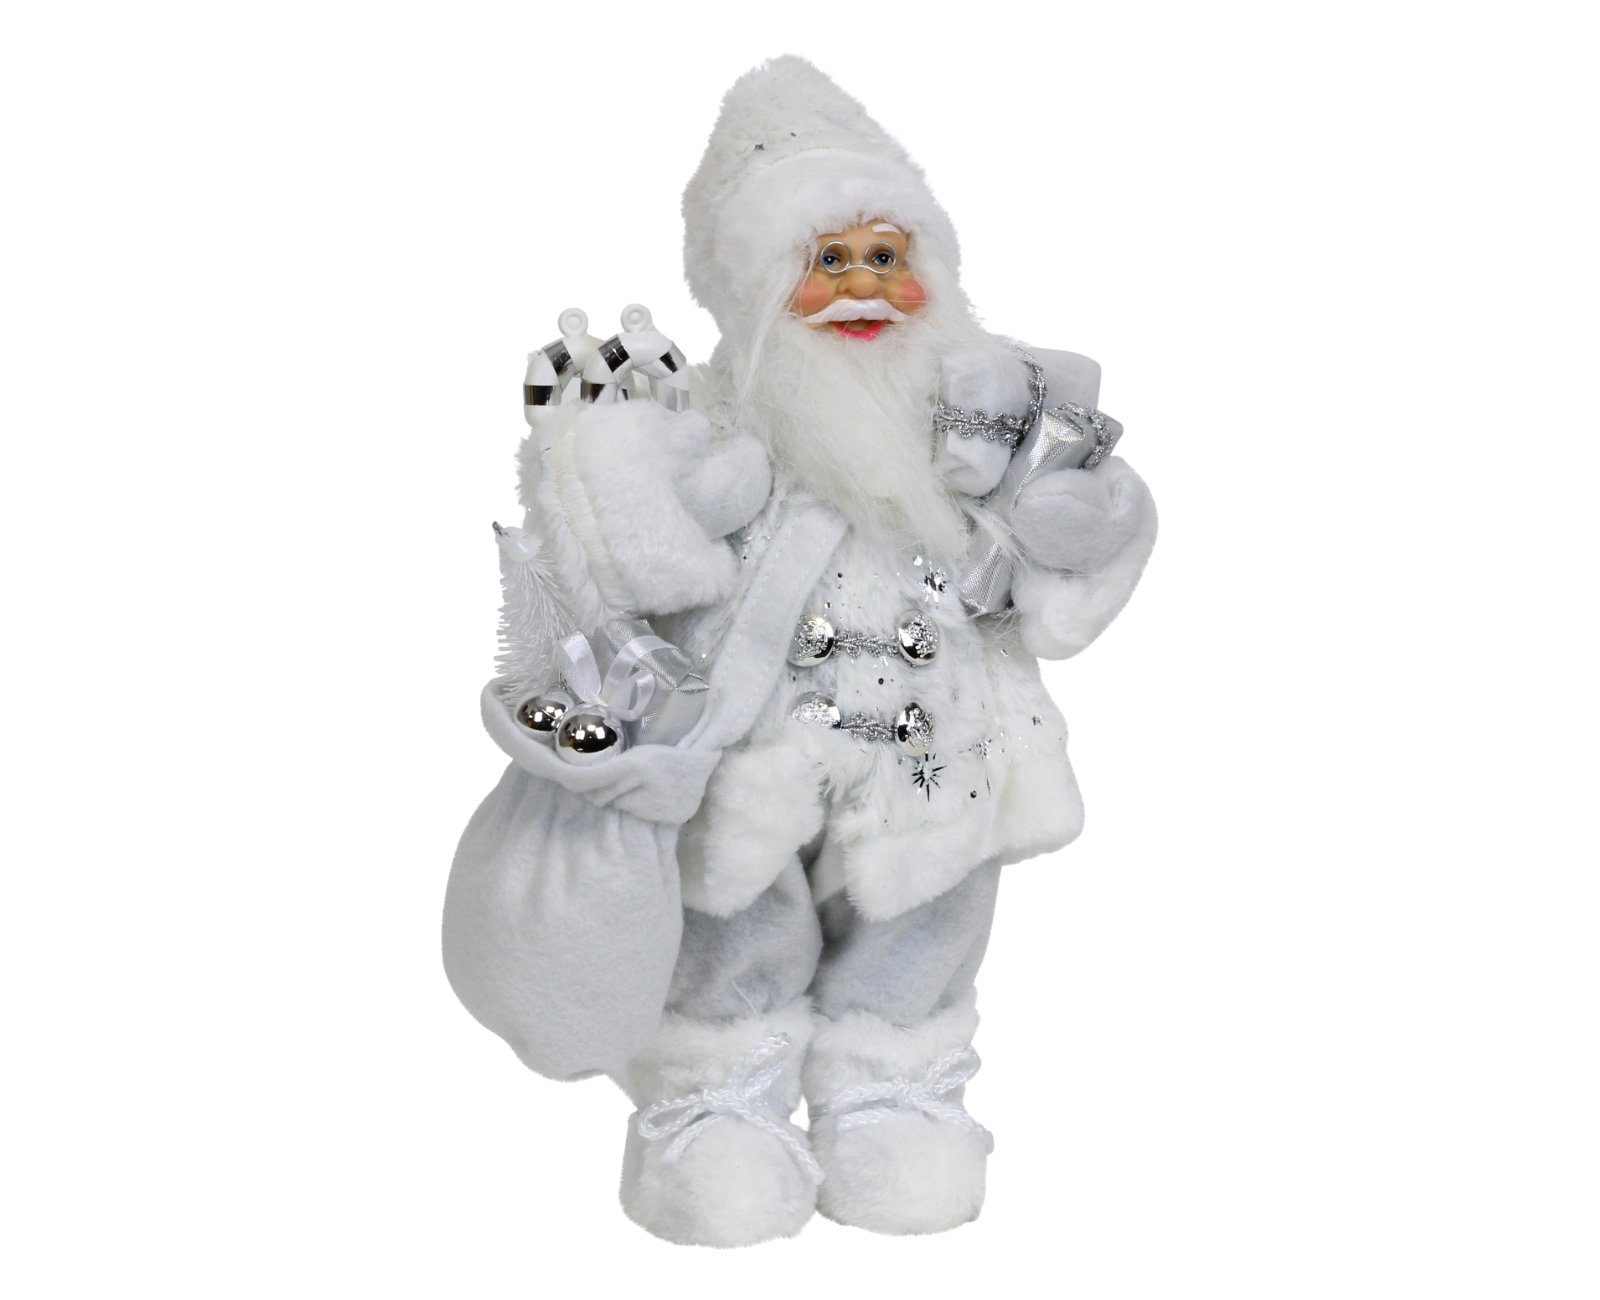 weiß Nikolaus mit Figur stehend HAGO Weihnachtsfigur Weihnachtsmann Geschenkesack Weihnachtsdeko